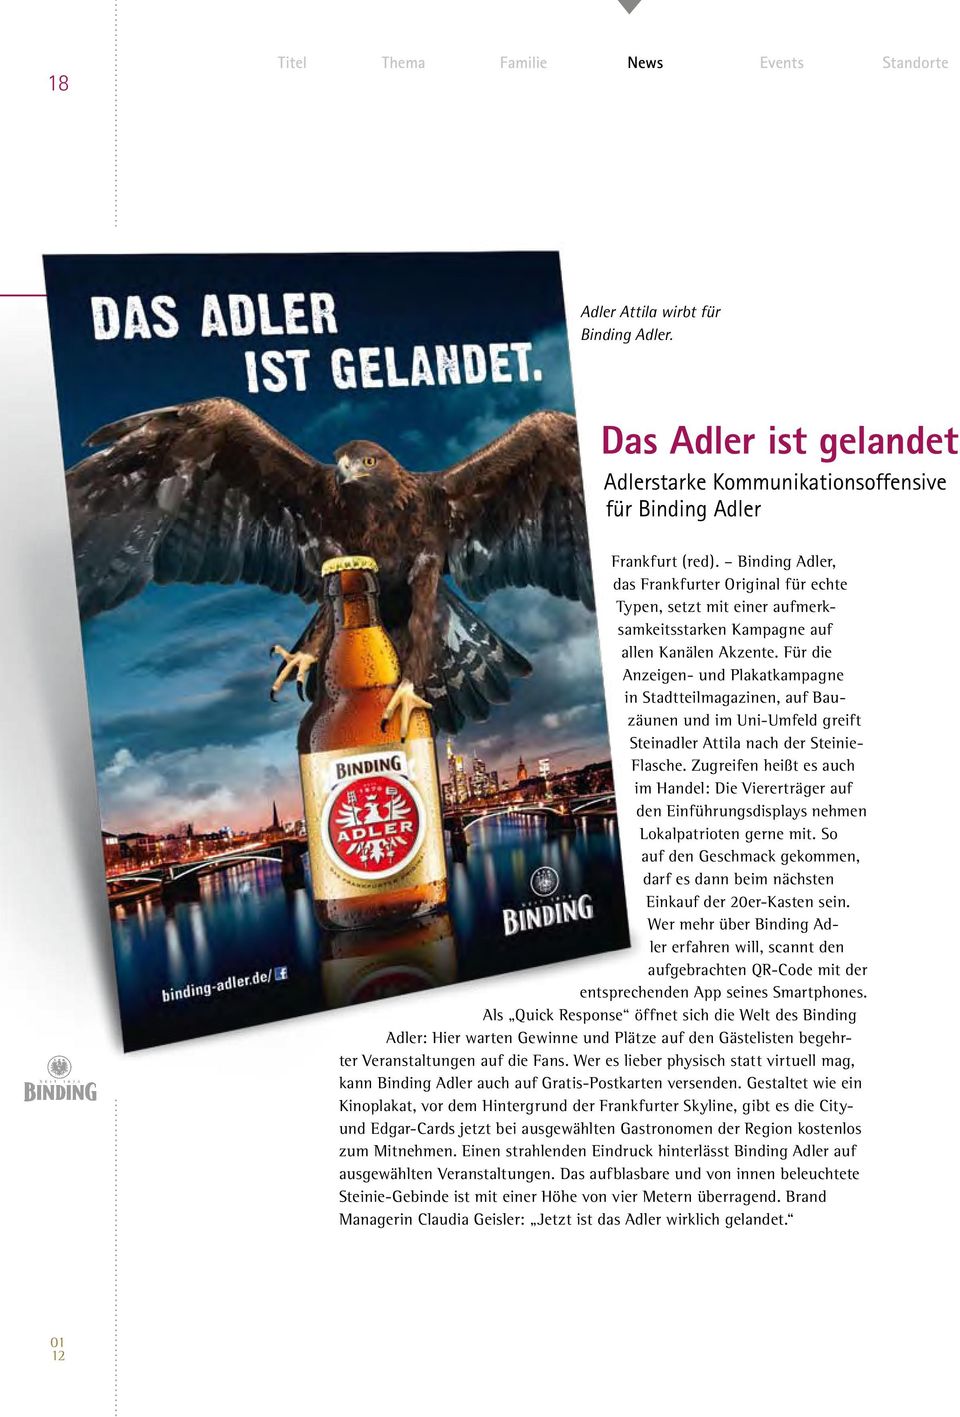 Für die Anzeigen- und Plakatkampagne in Stadtteilmagazinen, auf Bauzäunen und im Uni-Umfeld greift Steinadler Attila nach der Steinie- Flasche.